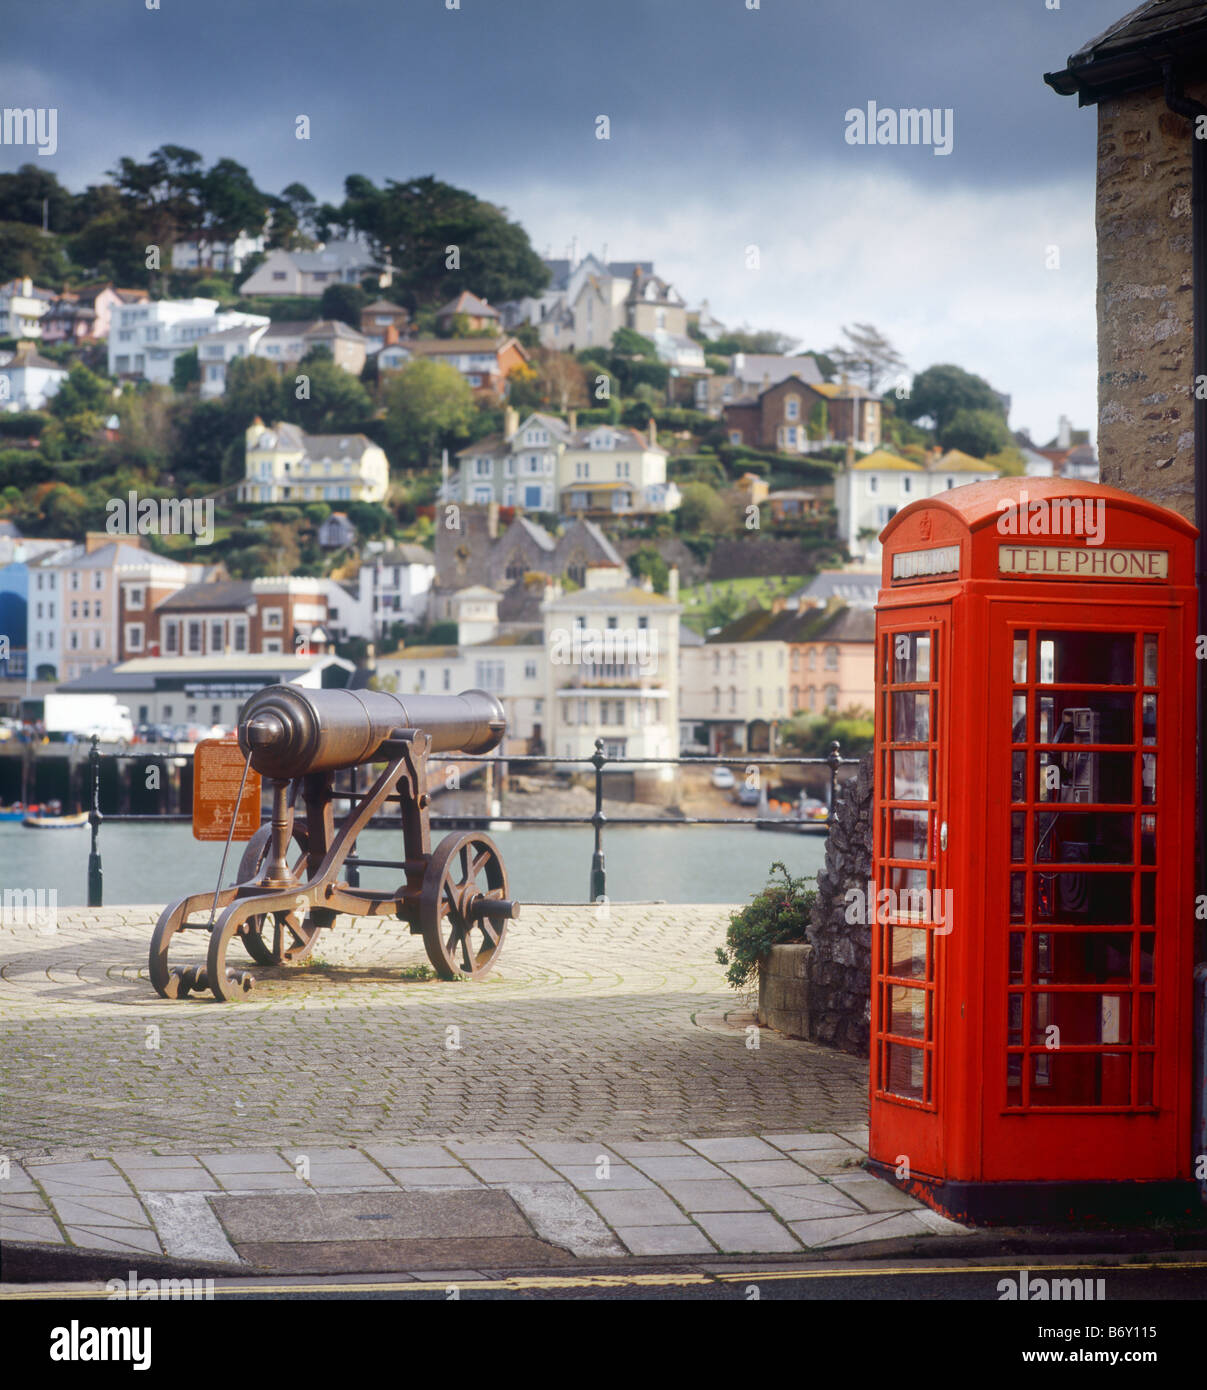 Kanone und ein öffentliches Telefon am Kai in Dartmouth, Devon, mit Kingwear im Hintergrund jmh Stockfoto